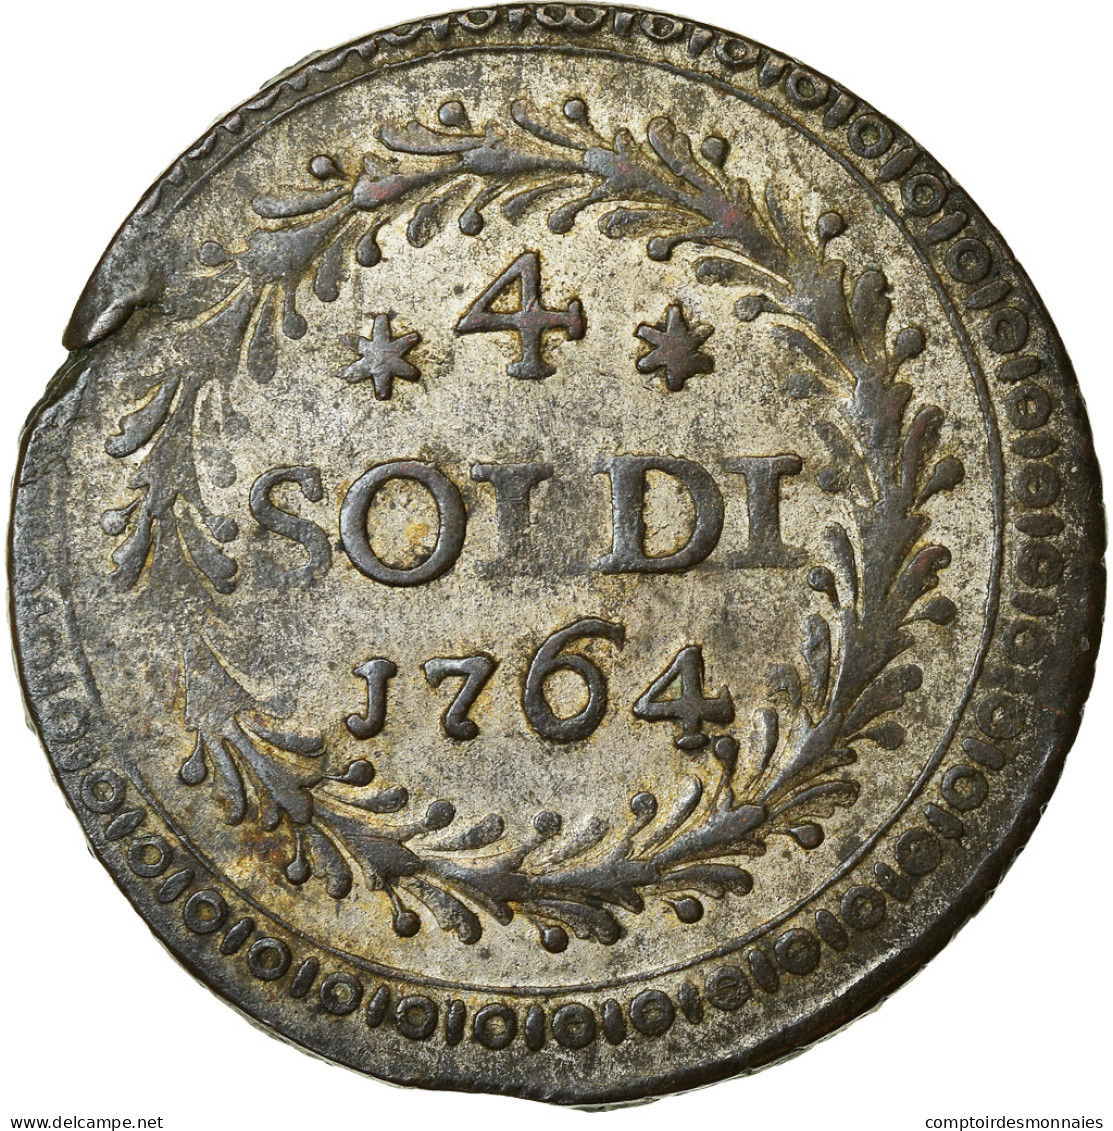 Monnaie, États Italiens, CORSICA, General Pasquale Paoli, 4 Soldi, 1764 - Corsica (1736-1768)